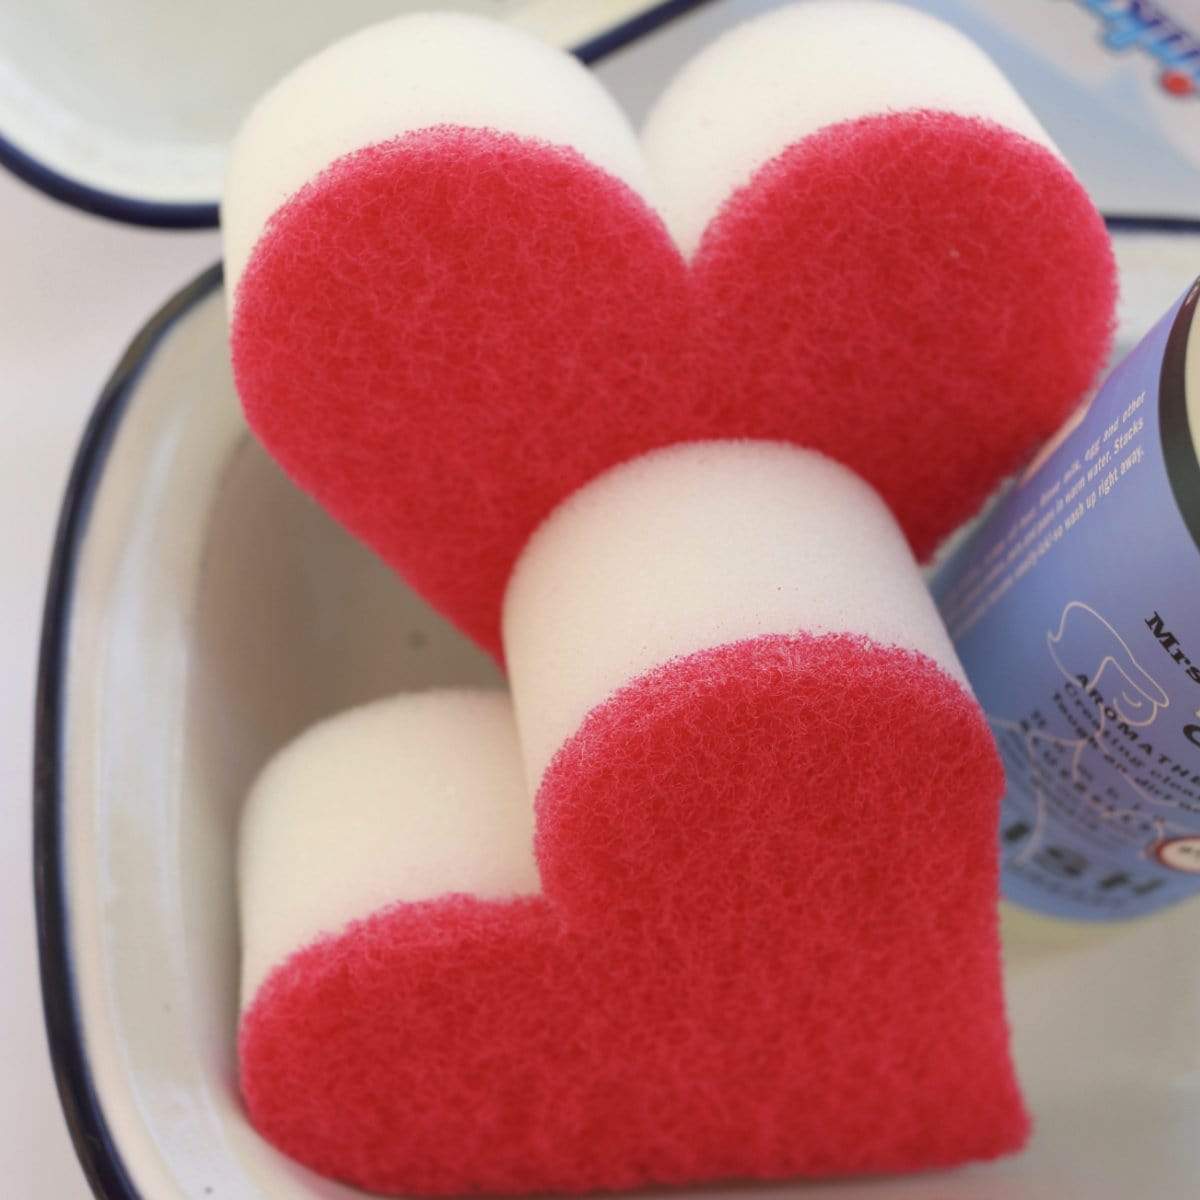 Caren Heart Shape Red Cocoa Shower Sponge